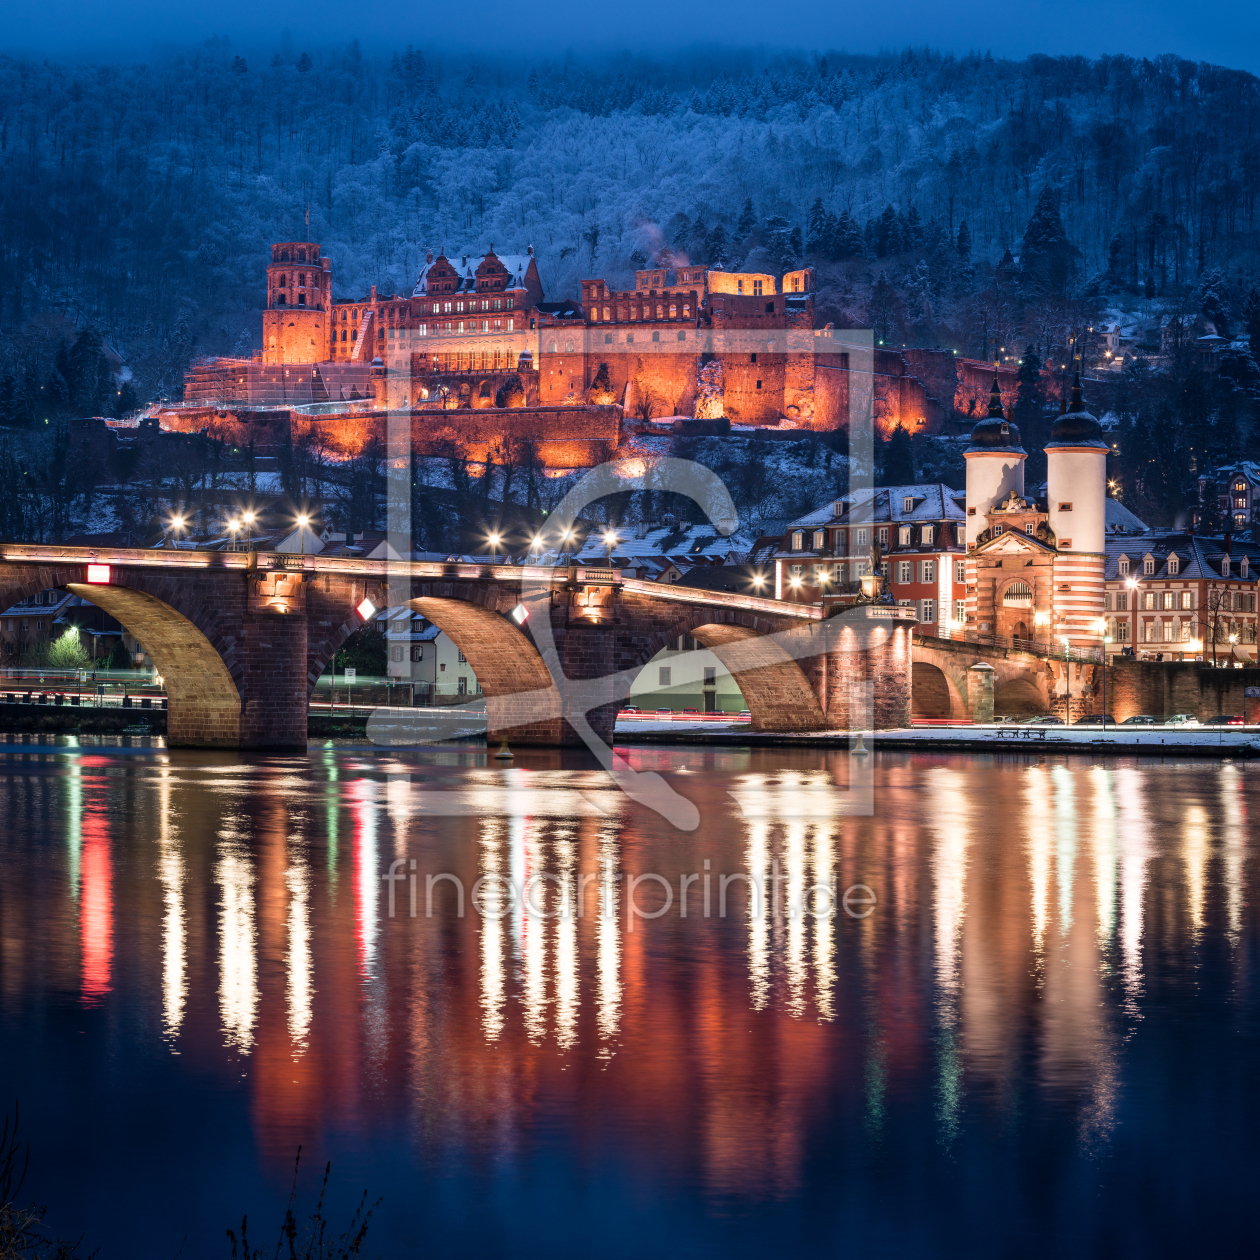 Bild-Nr.: 11966160 Heidelberger Schloss und Alte Brücke im Winter erstellt von eyetronic